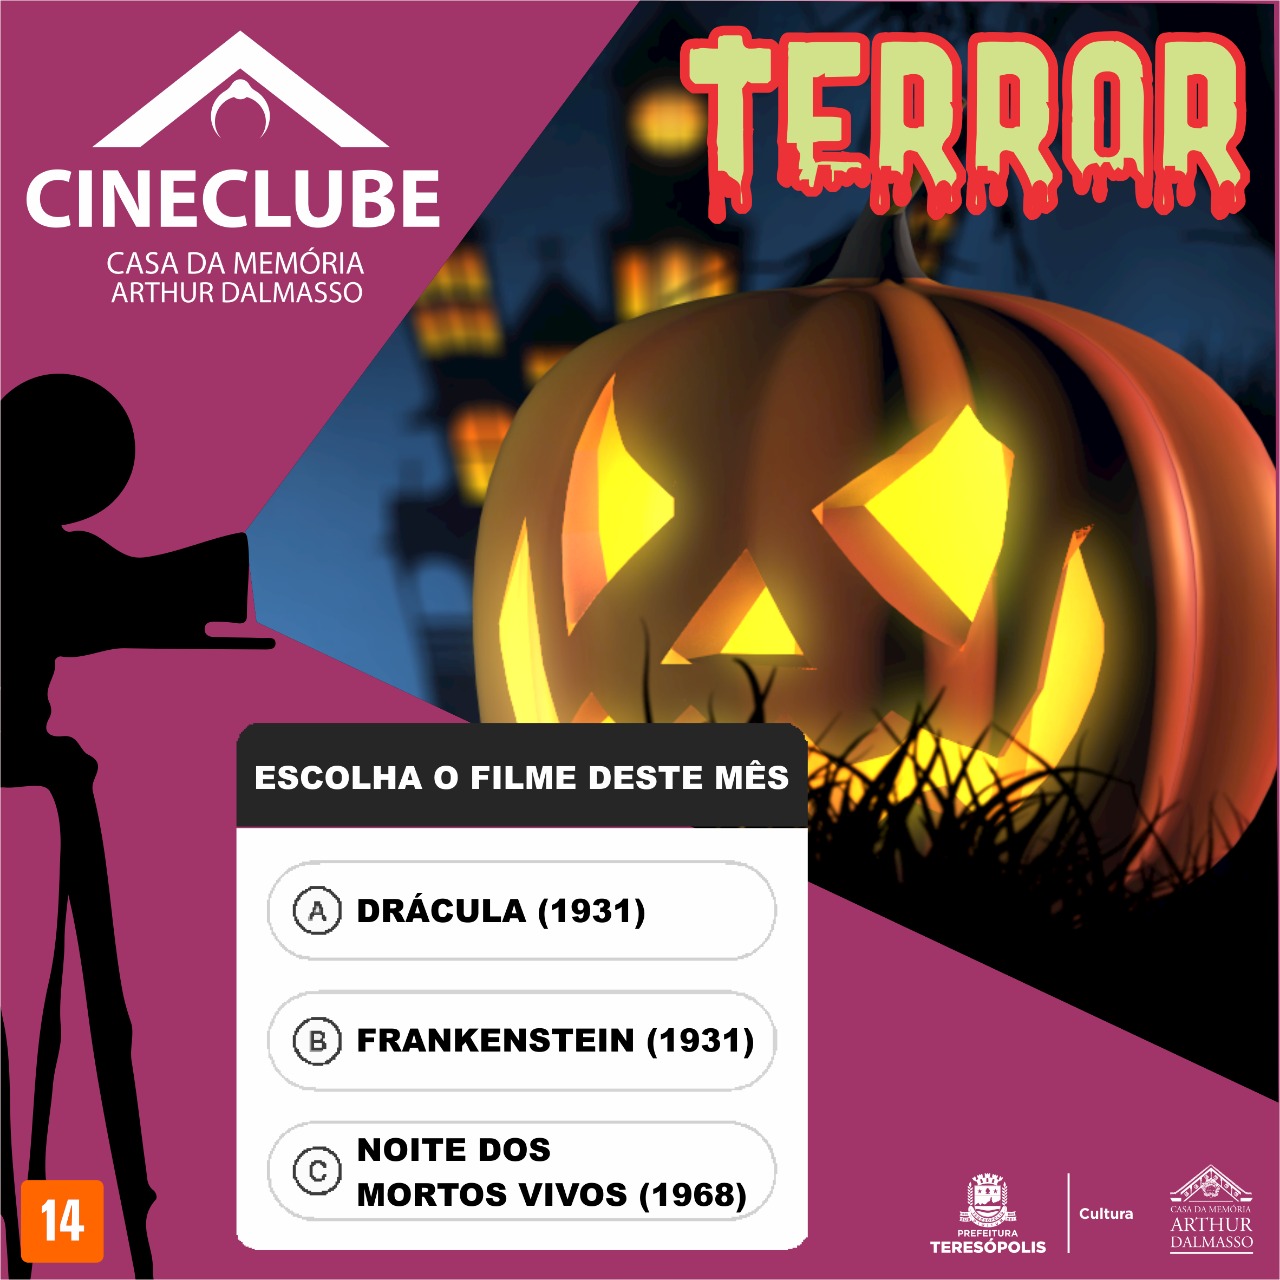 Você está visualizando atualmente ‘CINECLUBE’ realiza sessão terror de cinema na Casa da Memória